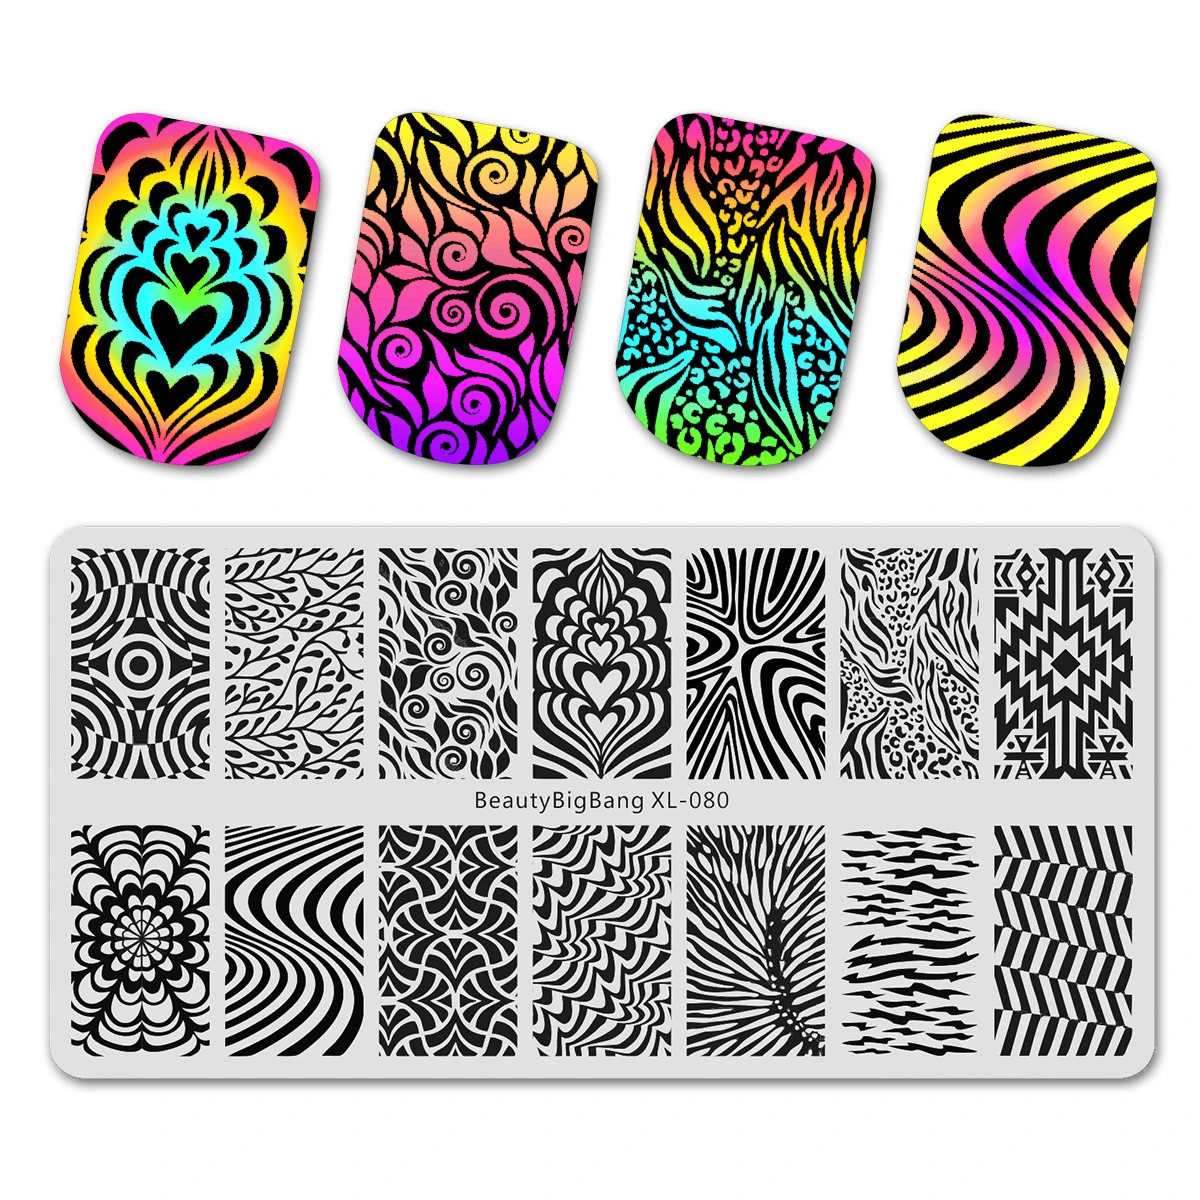 Beautybigbang дизайн ногтей штамповки пластины рамка для листьев Акула Бабочка Олень Единорог изображение ногтей аксессуары шаблон формы XL-084 - Цвет: 80